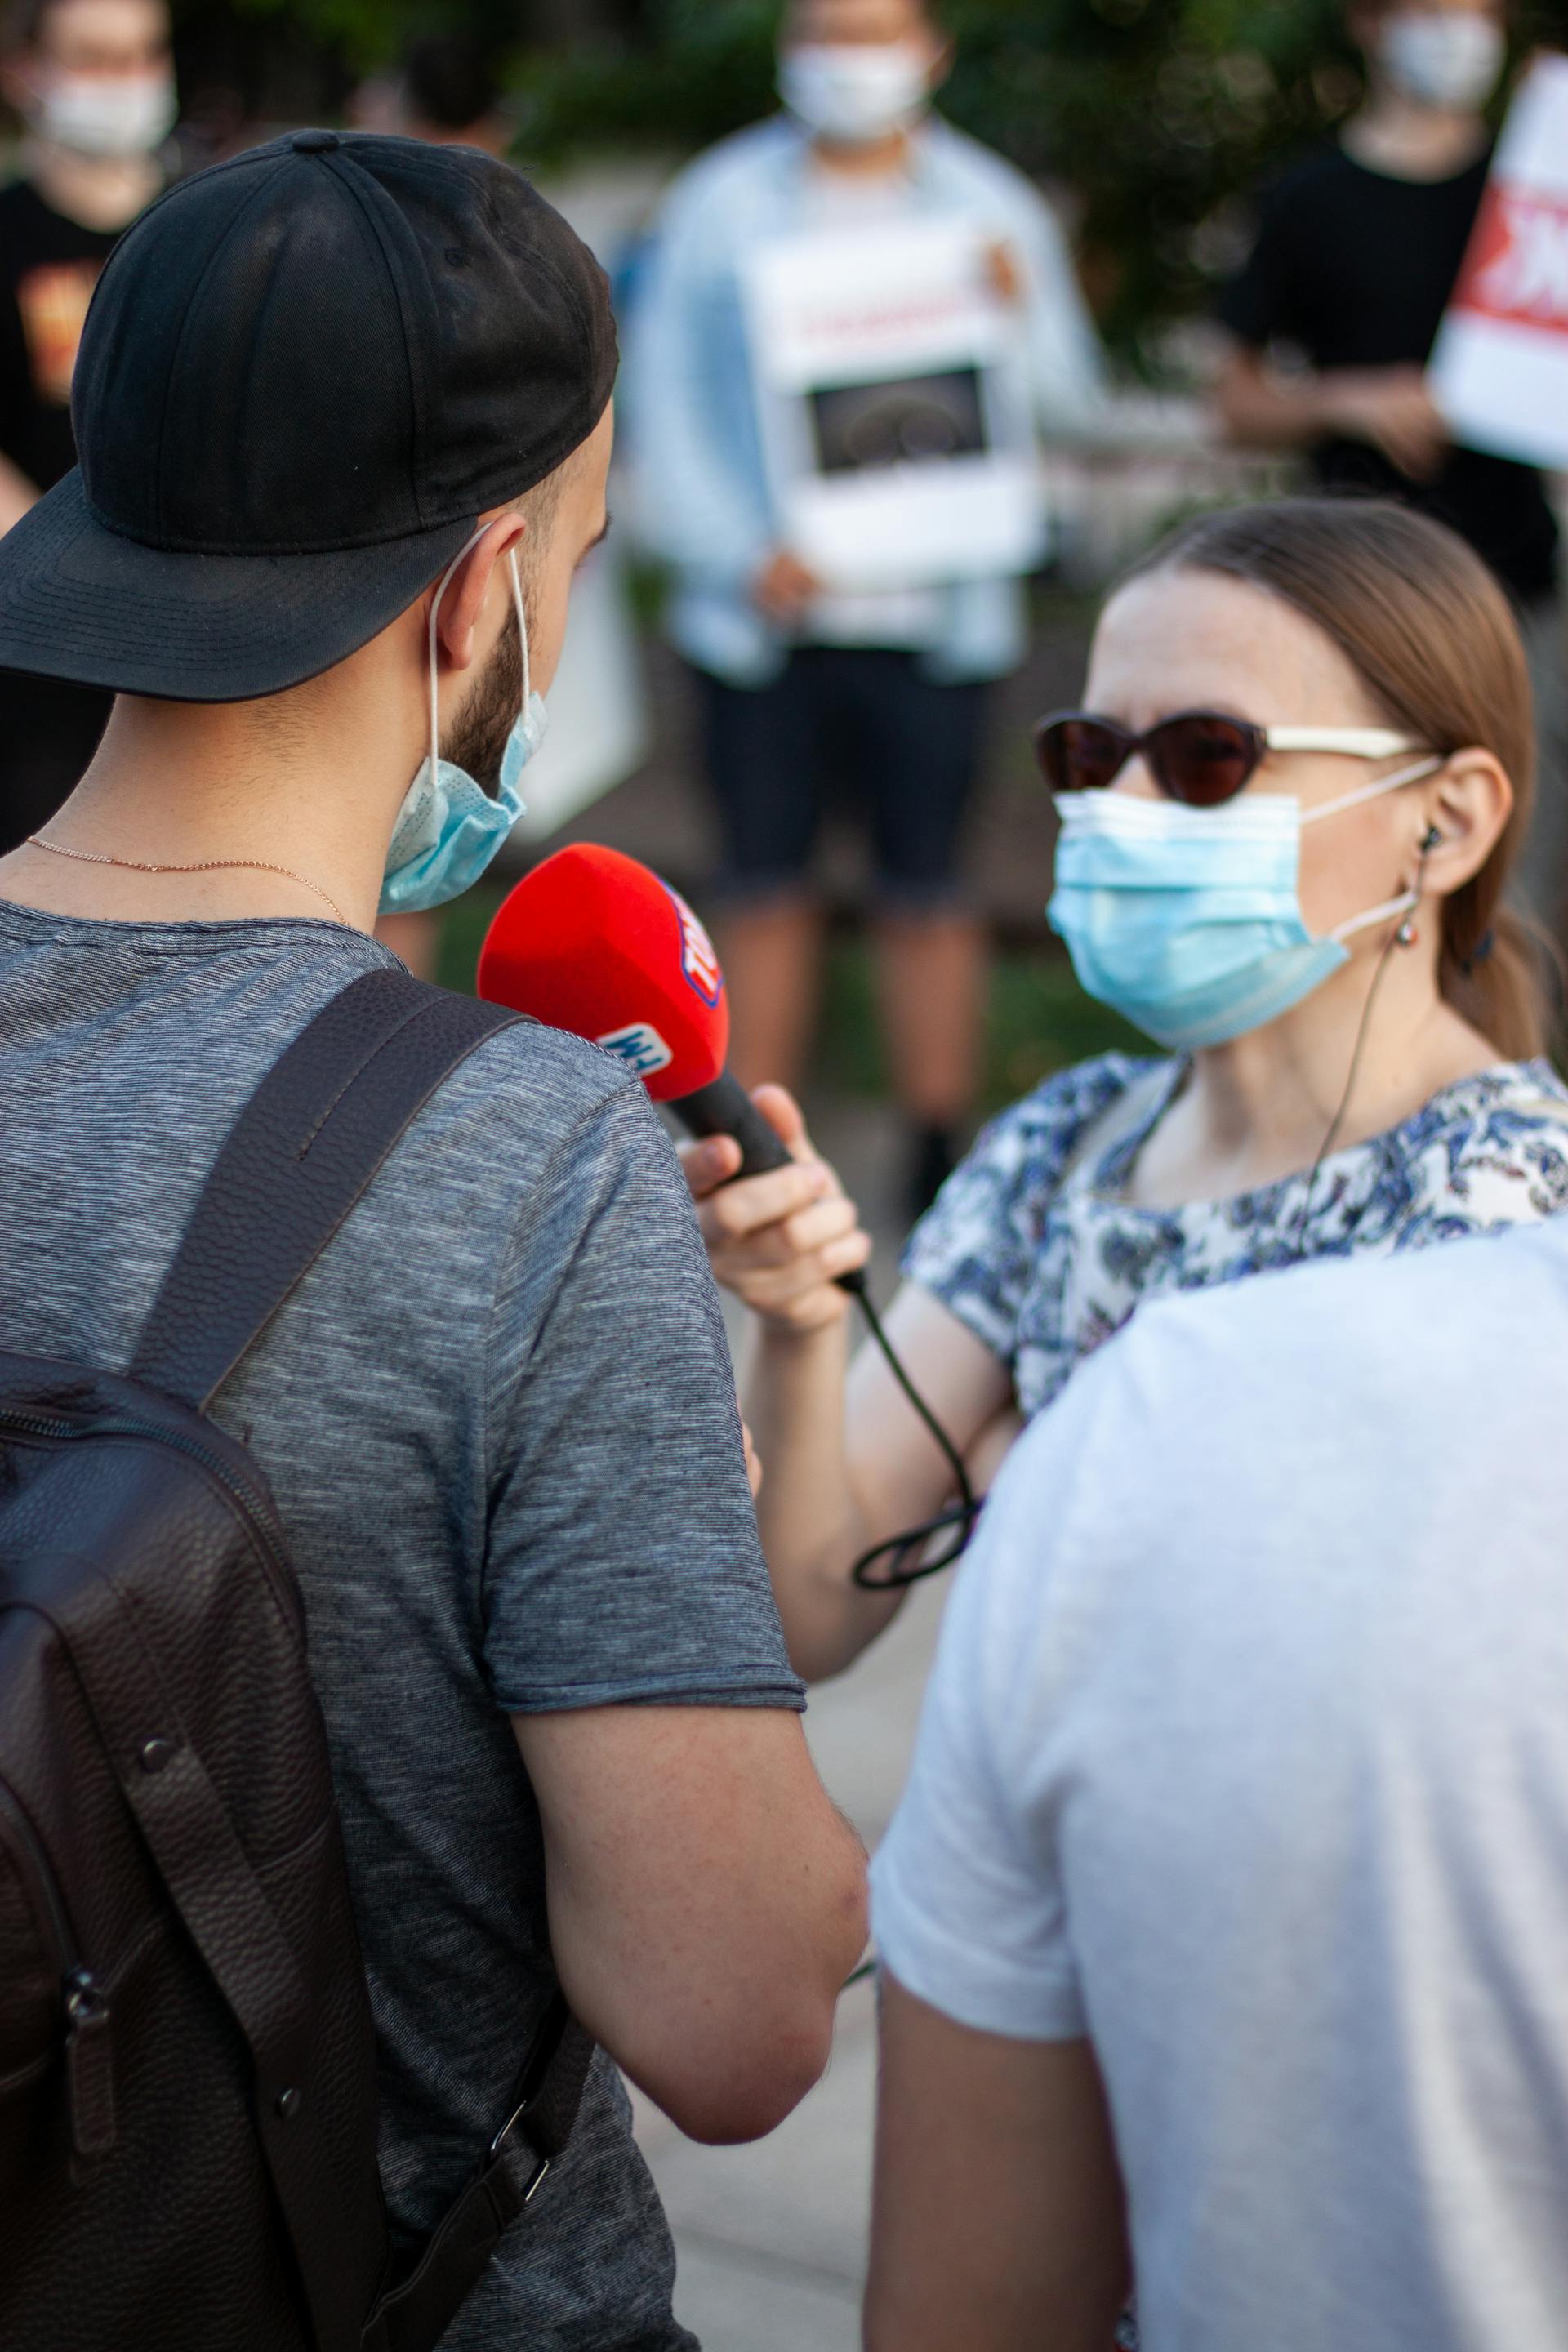 Une personne faisant une interview dans la rue | Source : Pexels